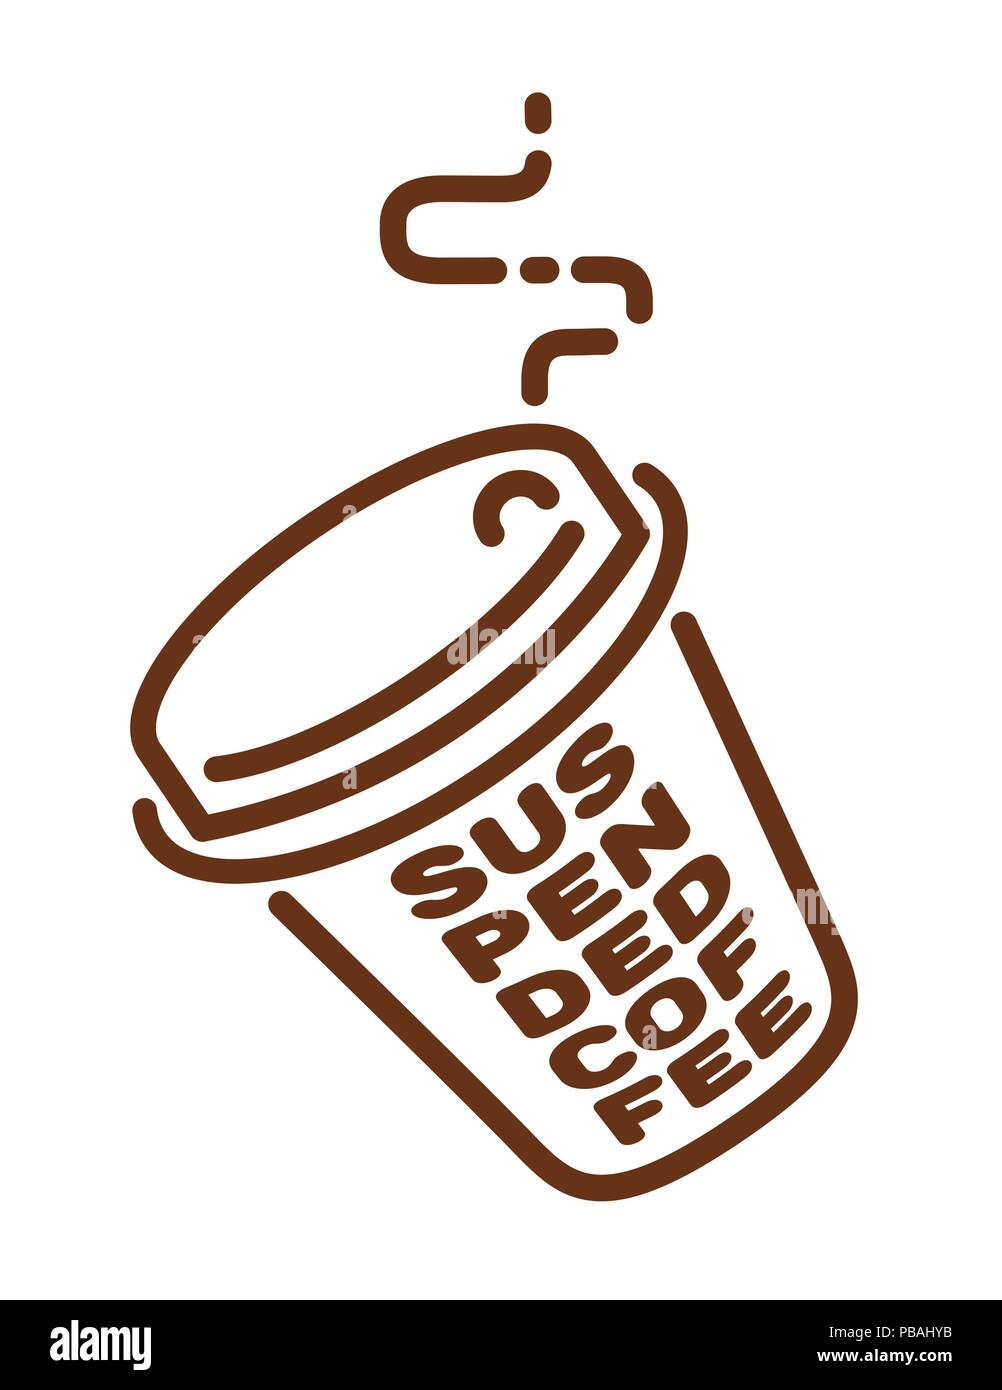 Trendy Linea piatta icona del caffè. Il caffè sospeso segno. Illustrazione Vettoriale Illustrazione Vettoriale